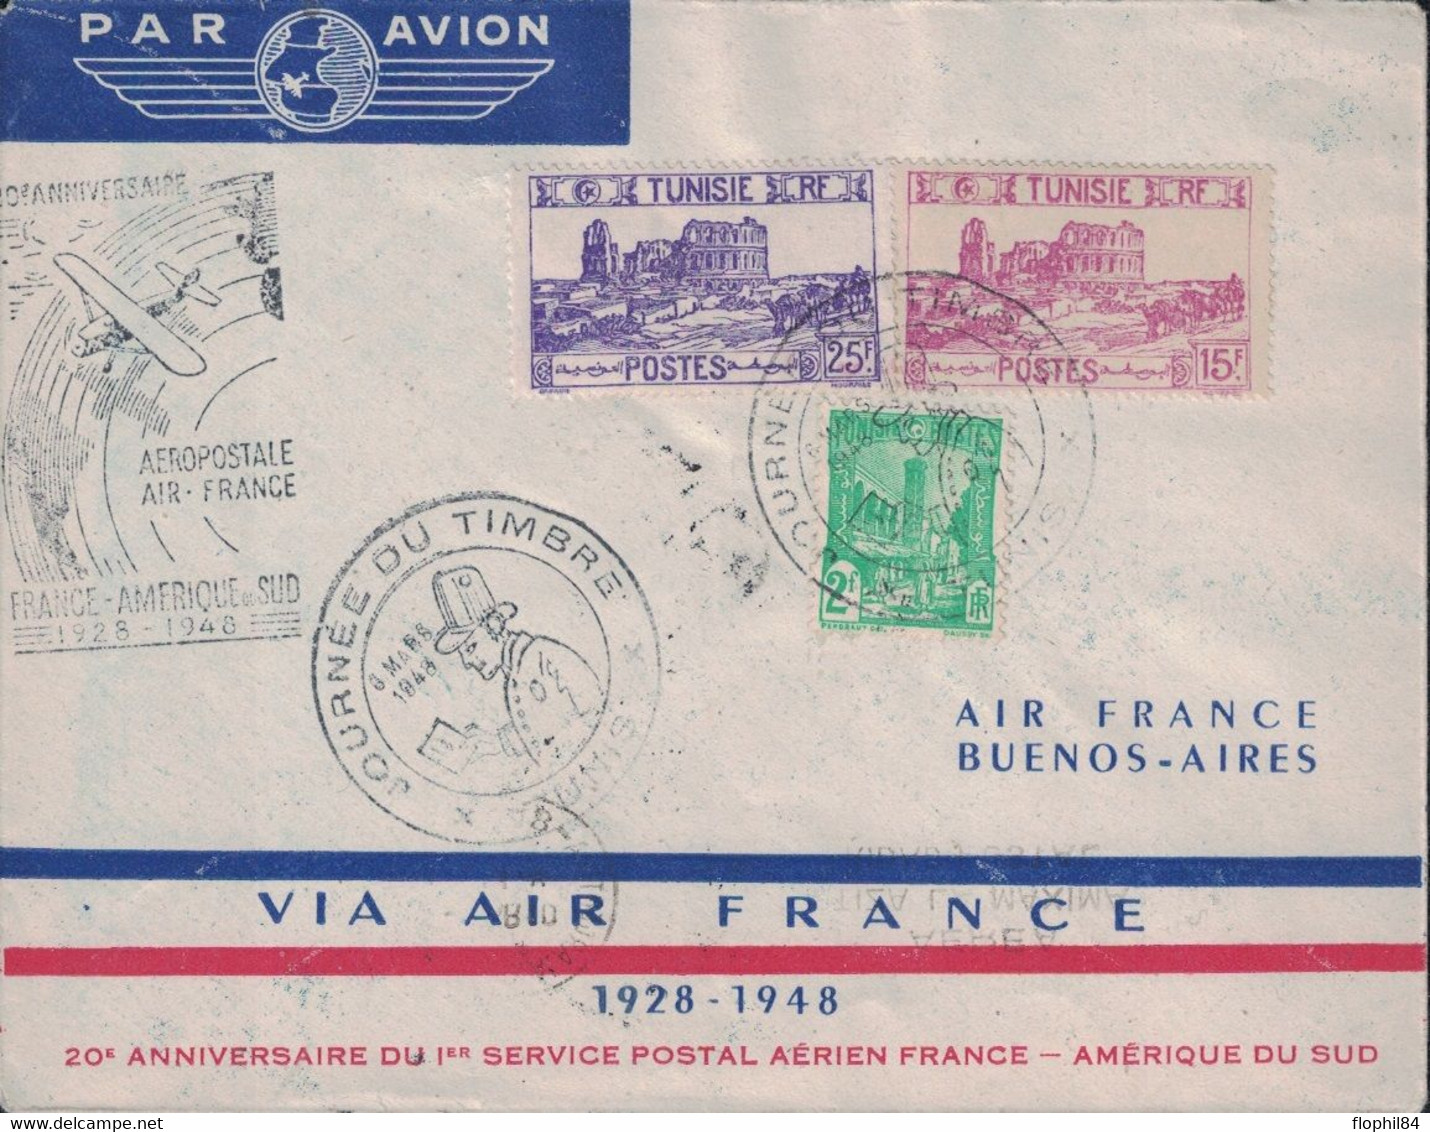 TUNISIE - TUNIS - ENVELOPPE AIR FRANCE - LIAISON FRANCE AMERIQUE DU SUD - 1929 EN 8 JOURS - 1948 EN 30 HEURES - CACHET S - Poste Aérienne